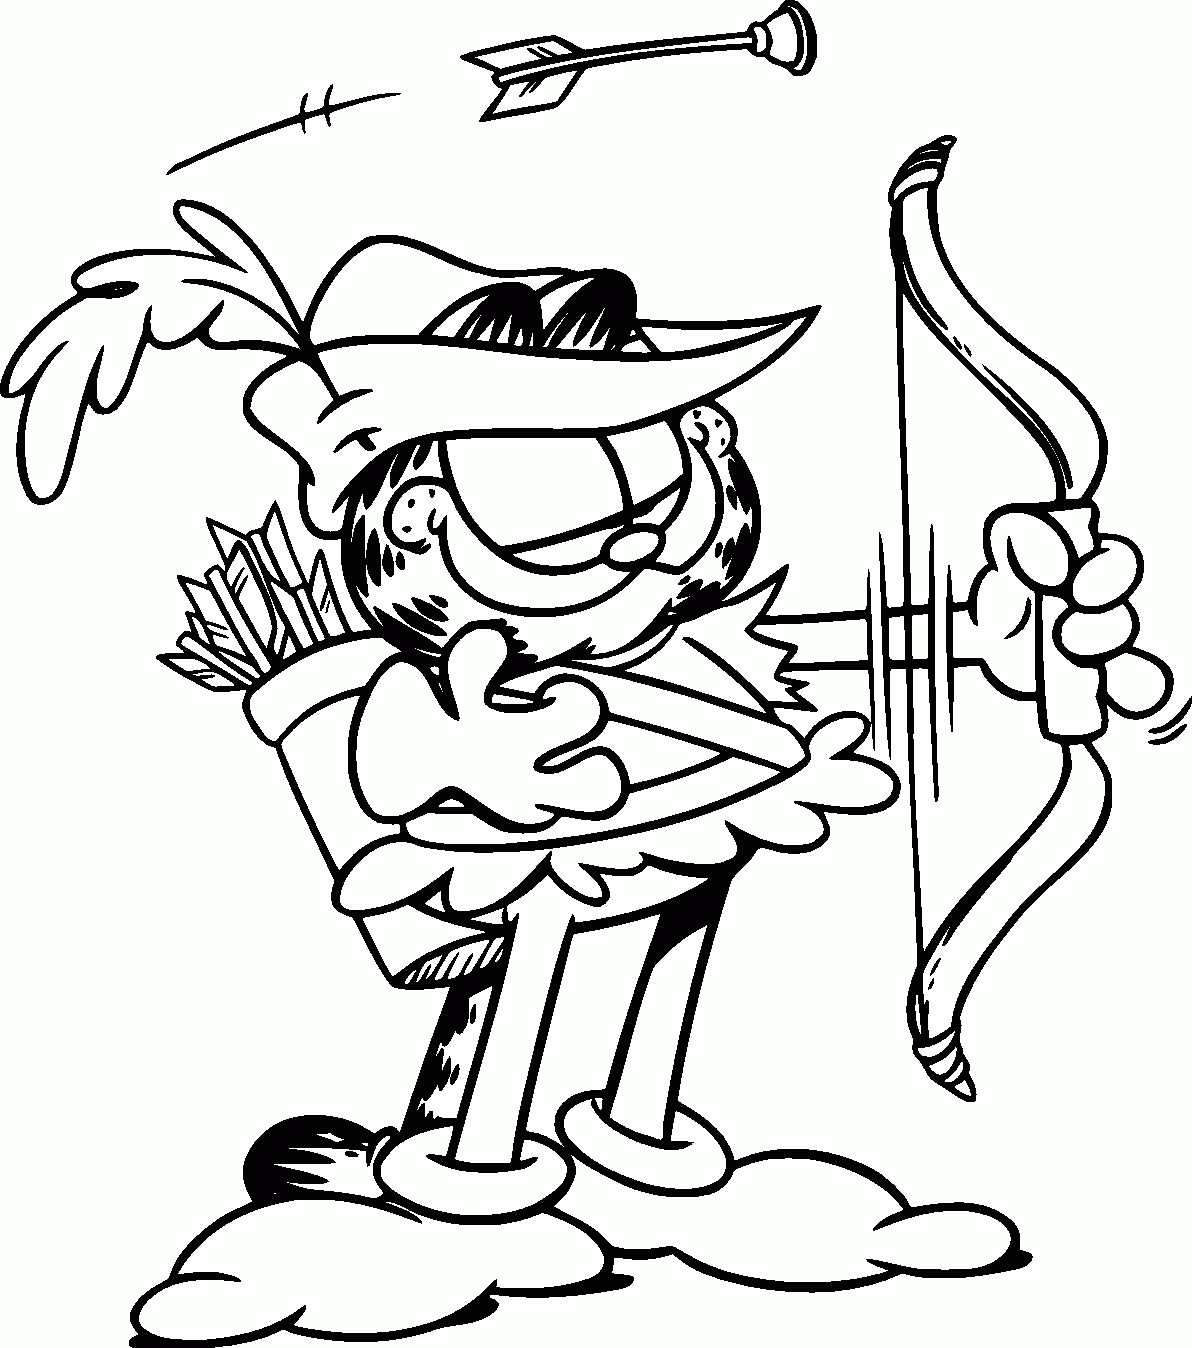 Garfield arqueiro